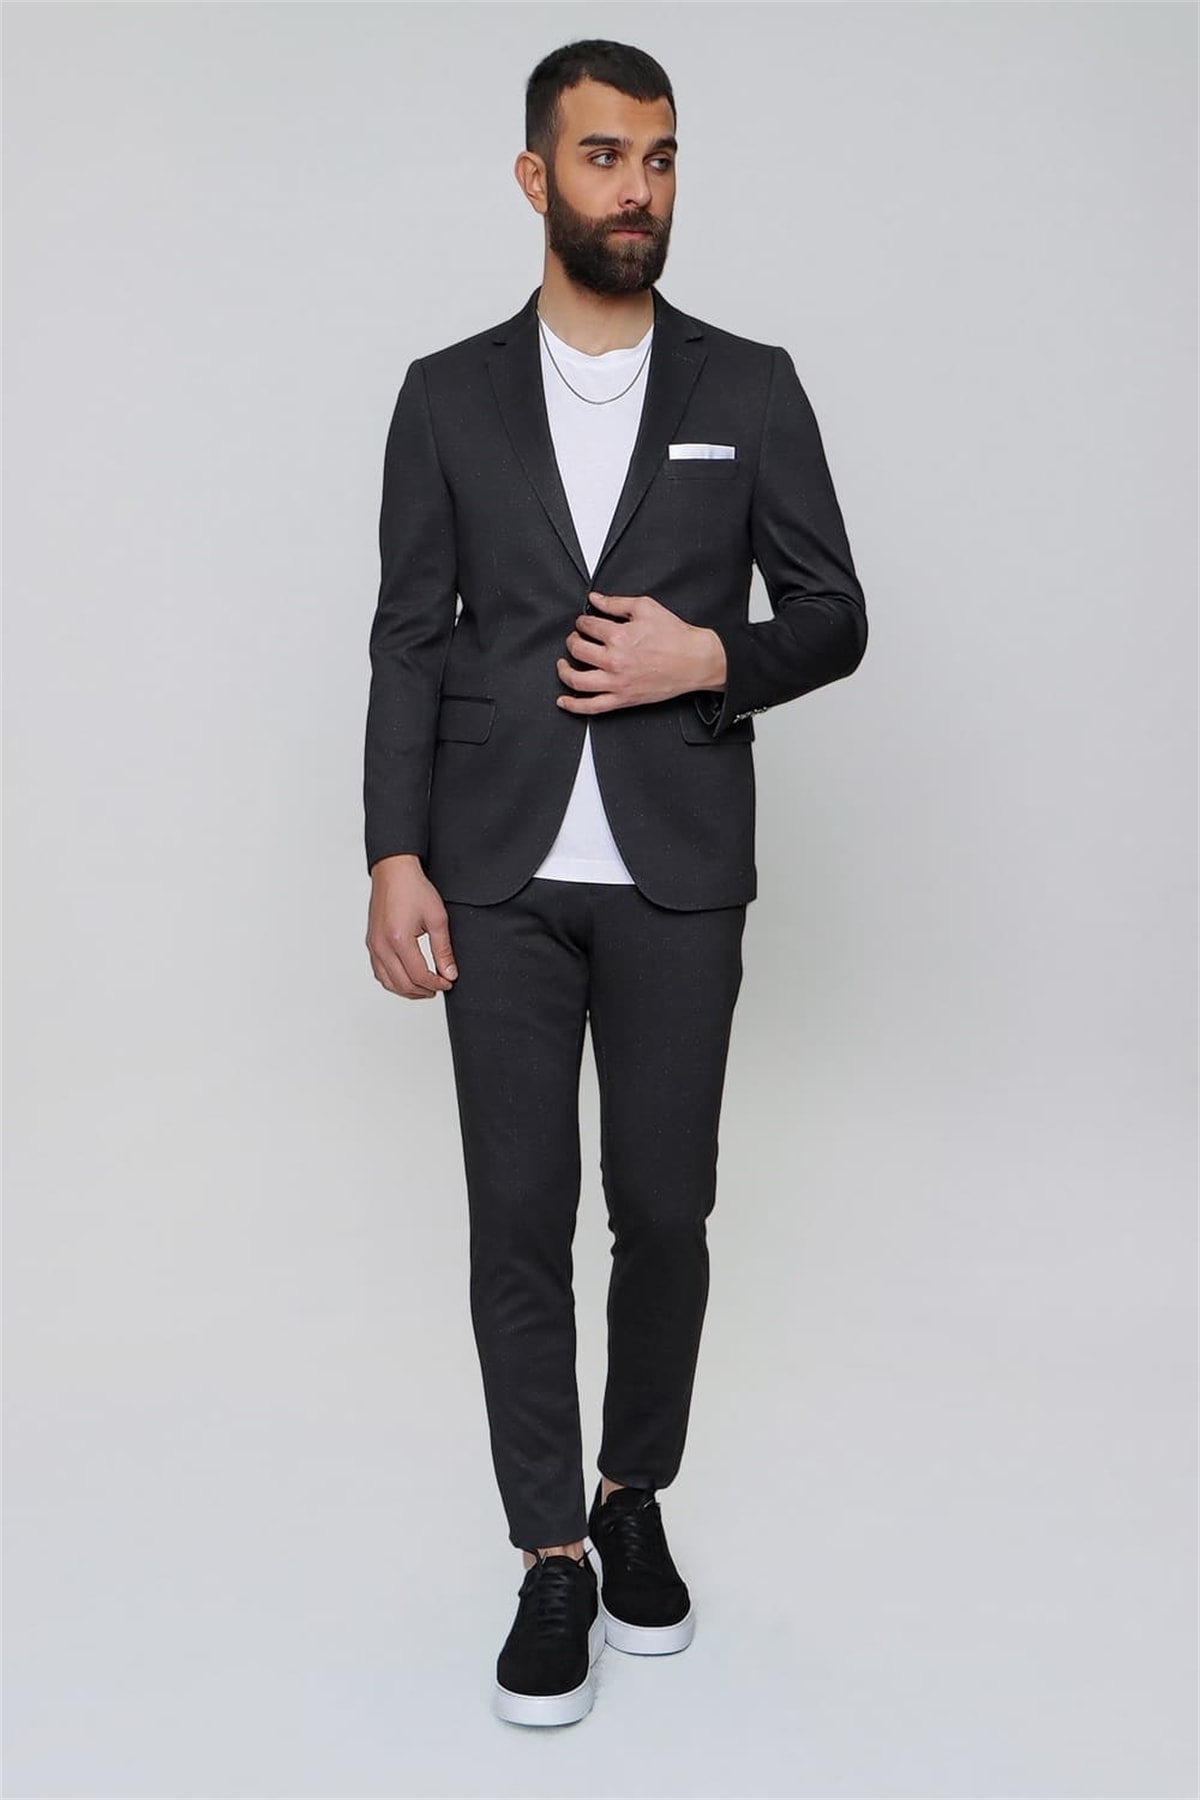 Efor Stk 012 Slim Fit Siyah Klasik Takım Elbise